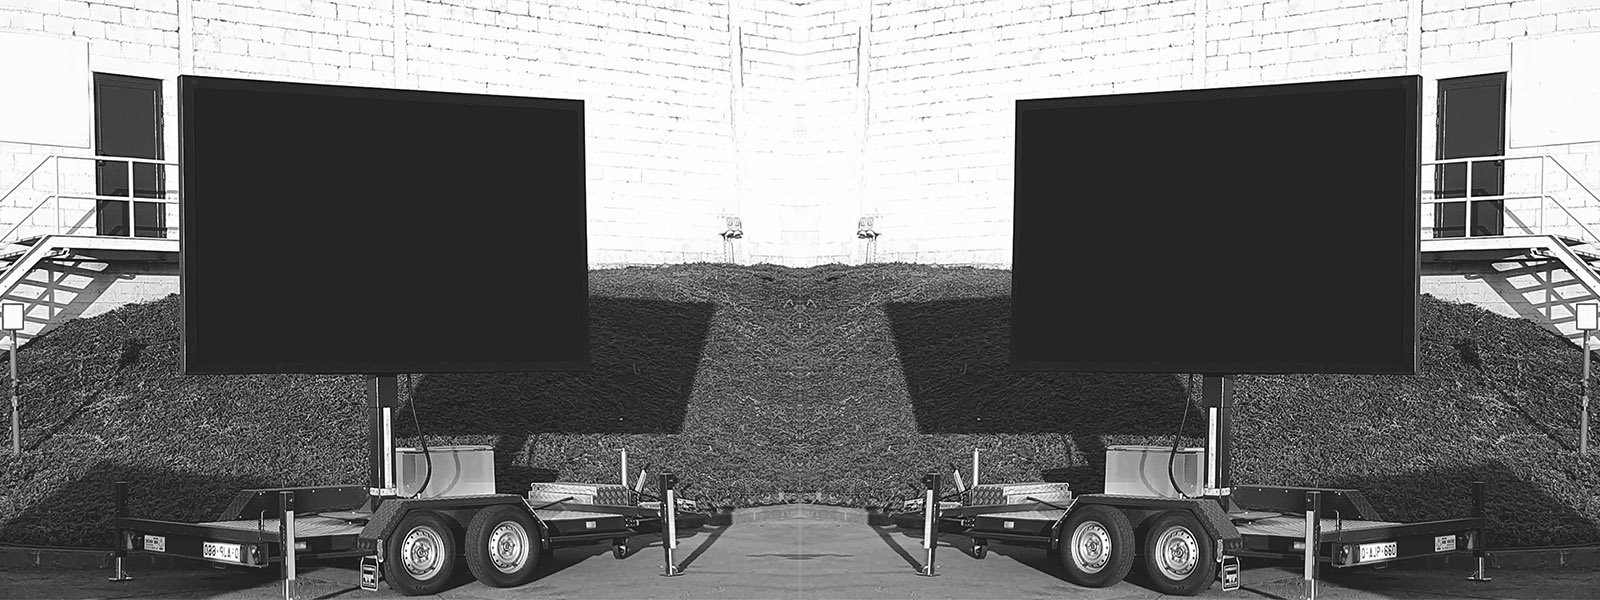 Écran Géant - Location de camion écran